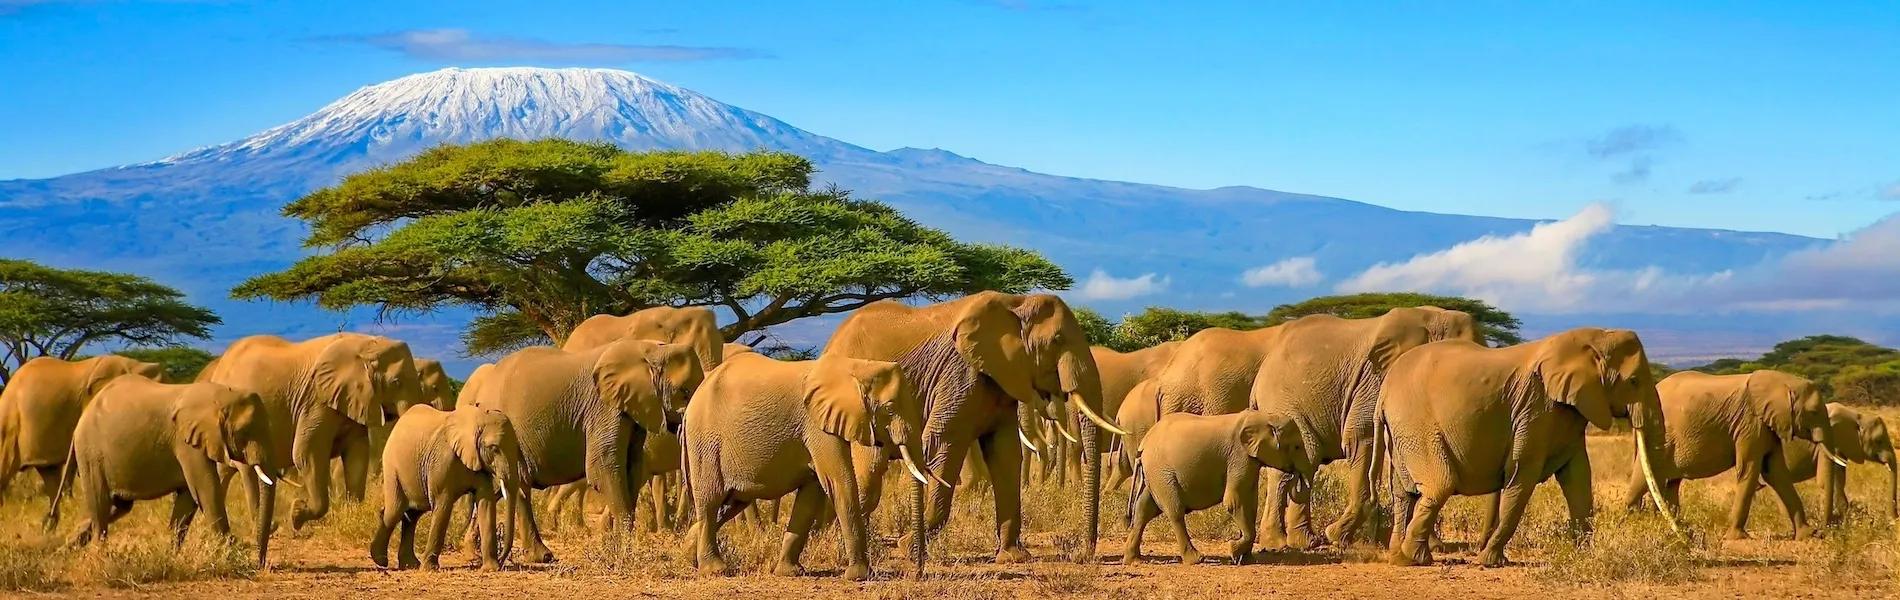 Úchvatná fotografie ze safari v Keni, zobrazující rozmanitou divokou přírodu a volně žijící slony